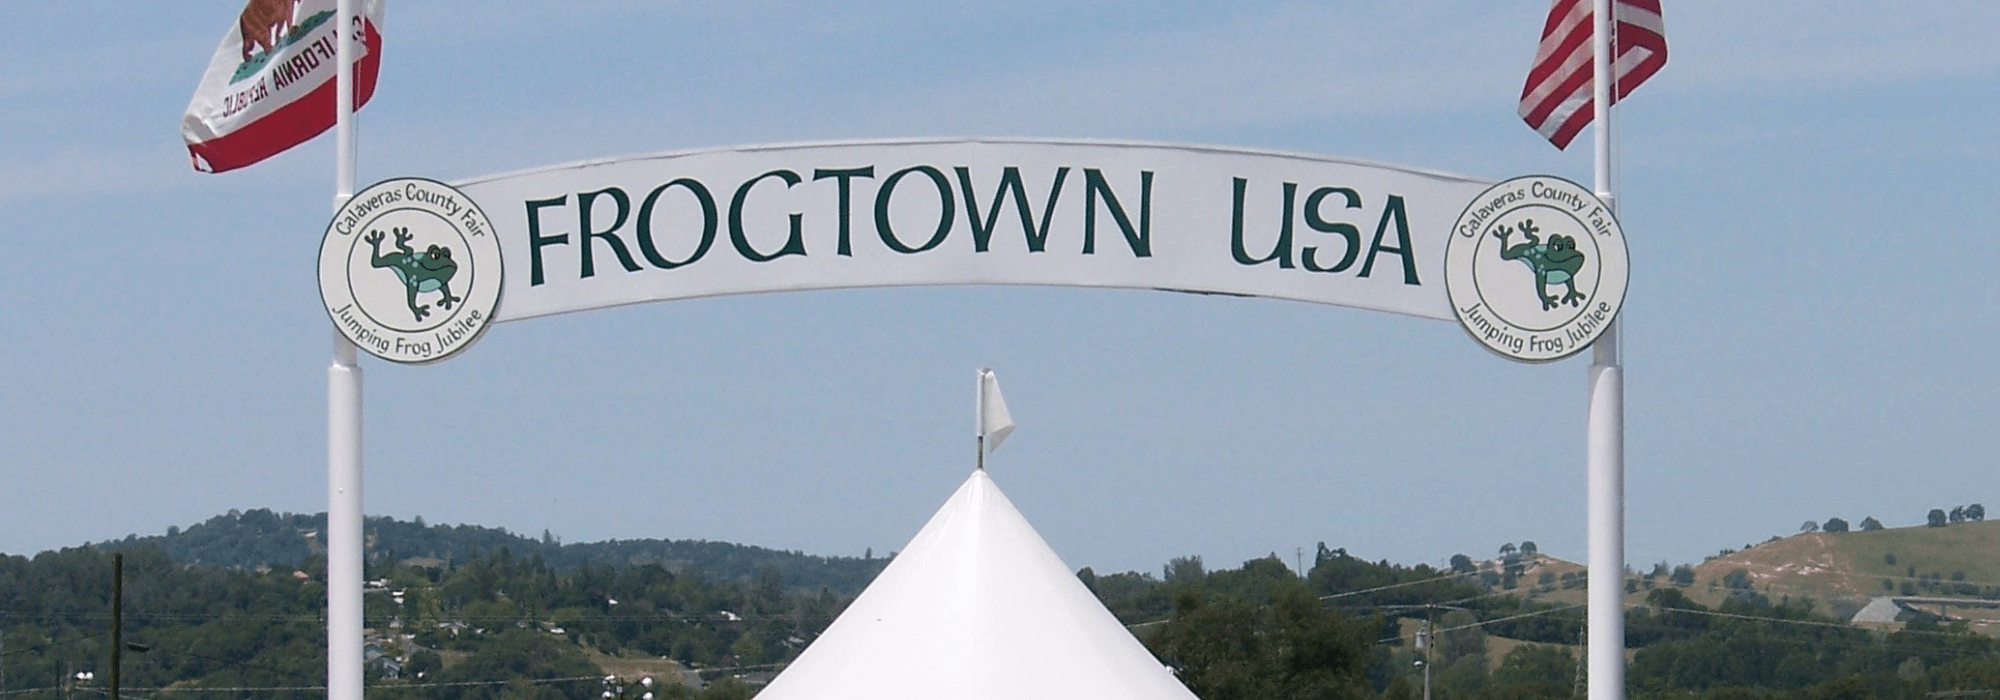 Frogtown USA